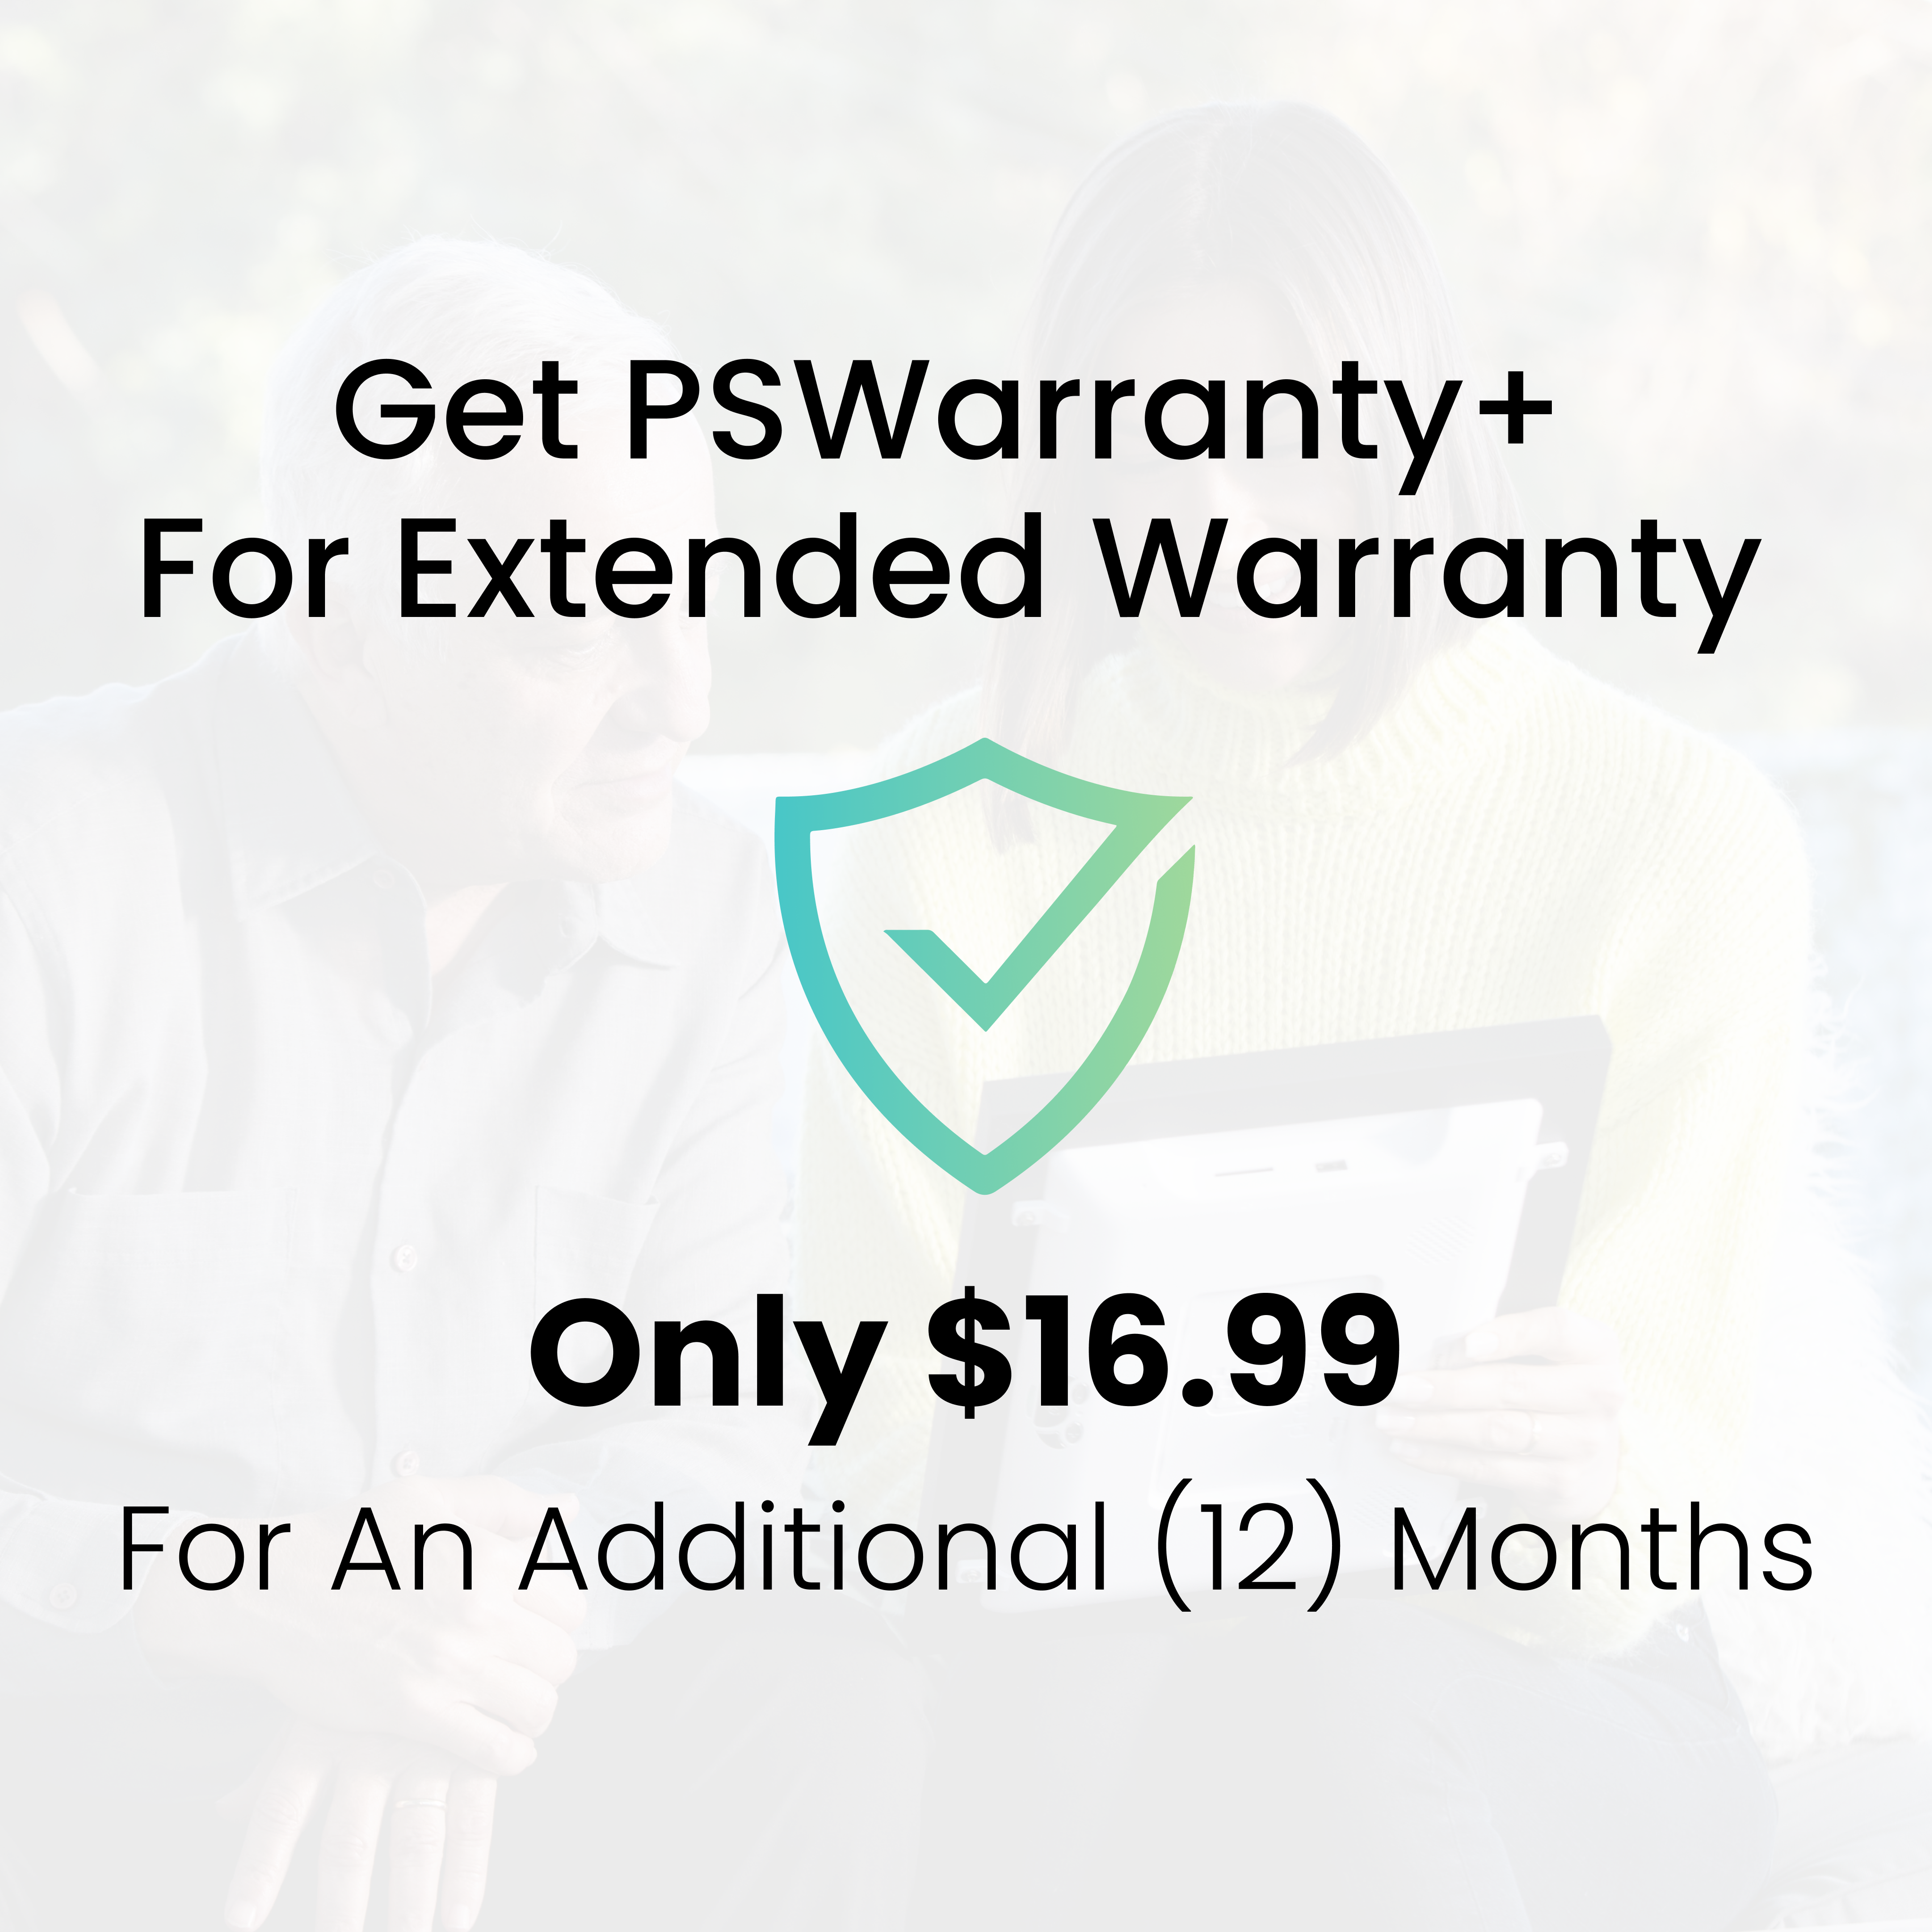 PSWarranty+ Extended Warranty